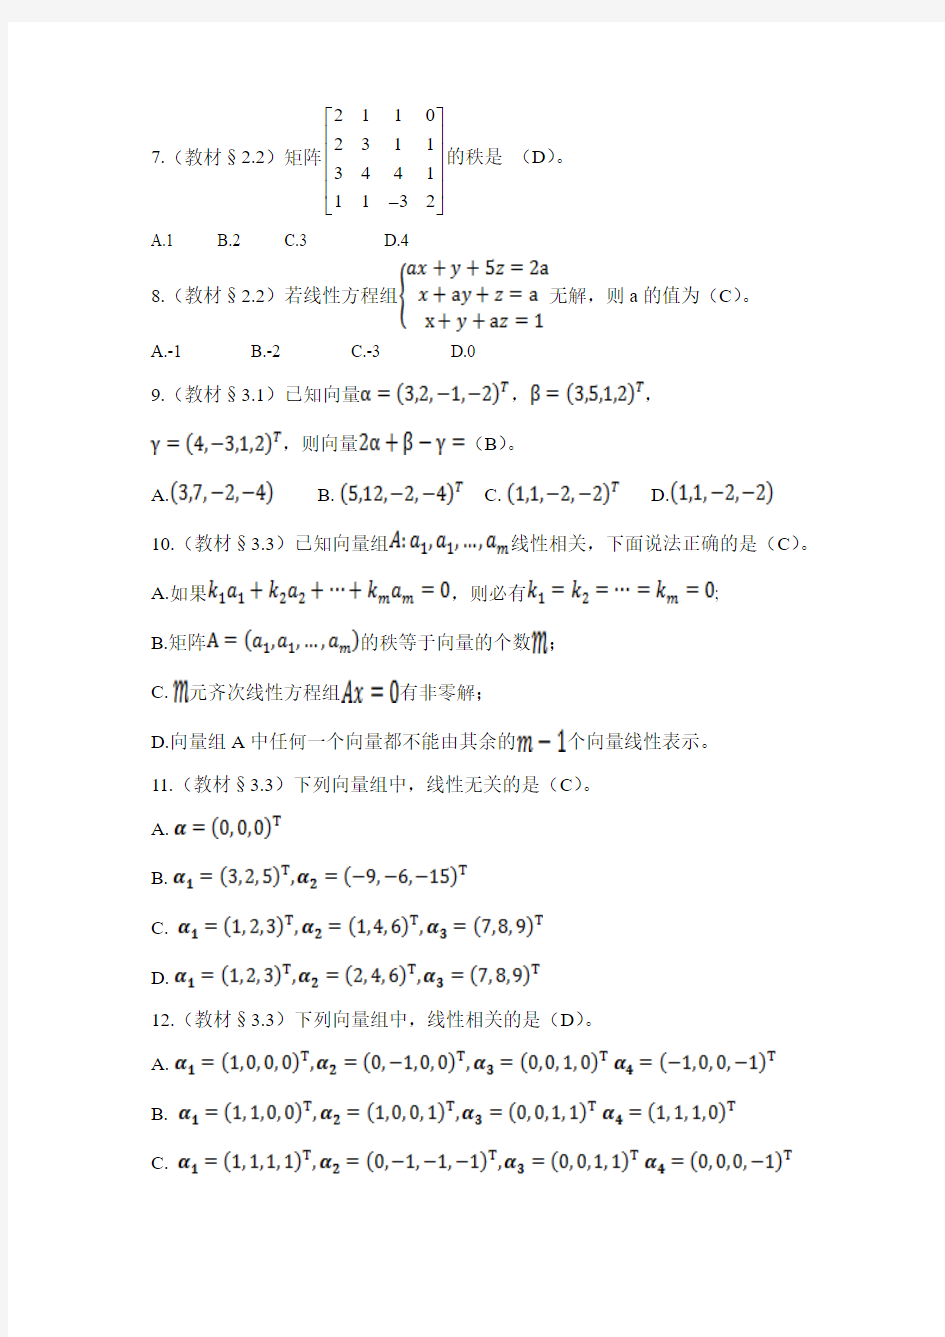 标准答案 北京大学2016年春季学期线性代数作业